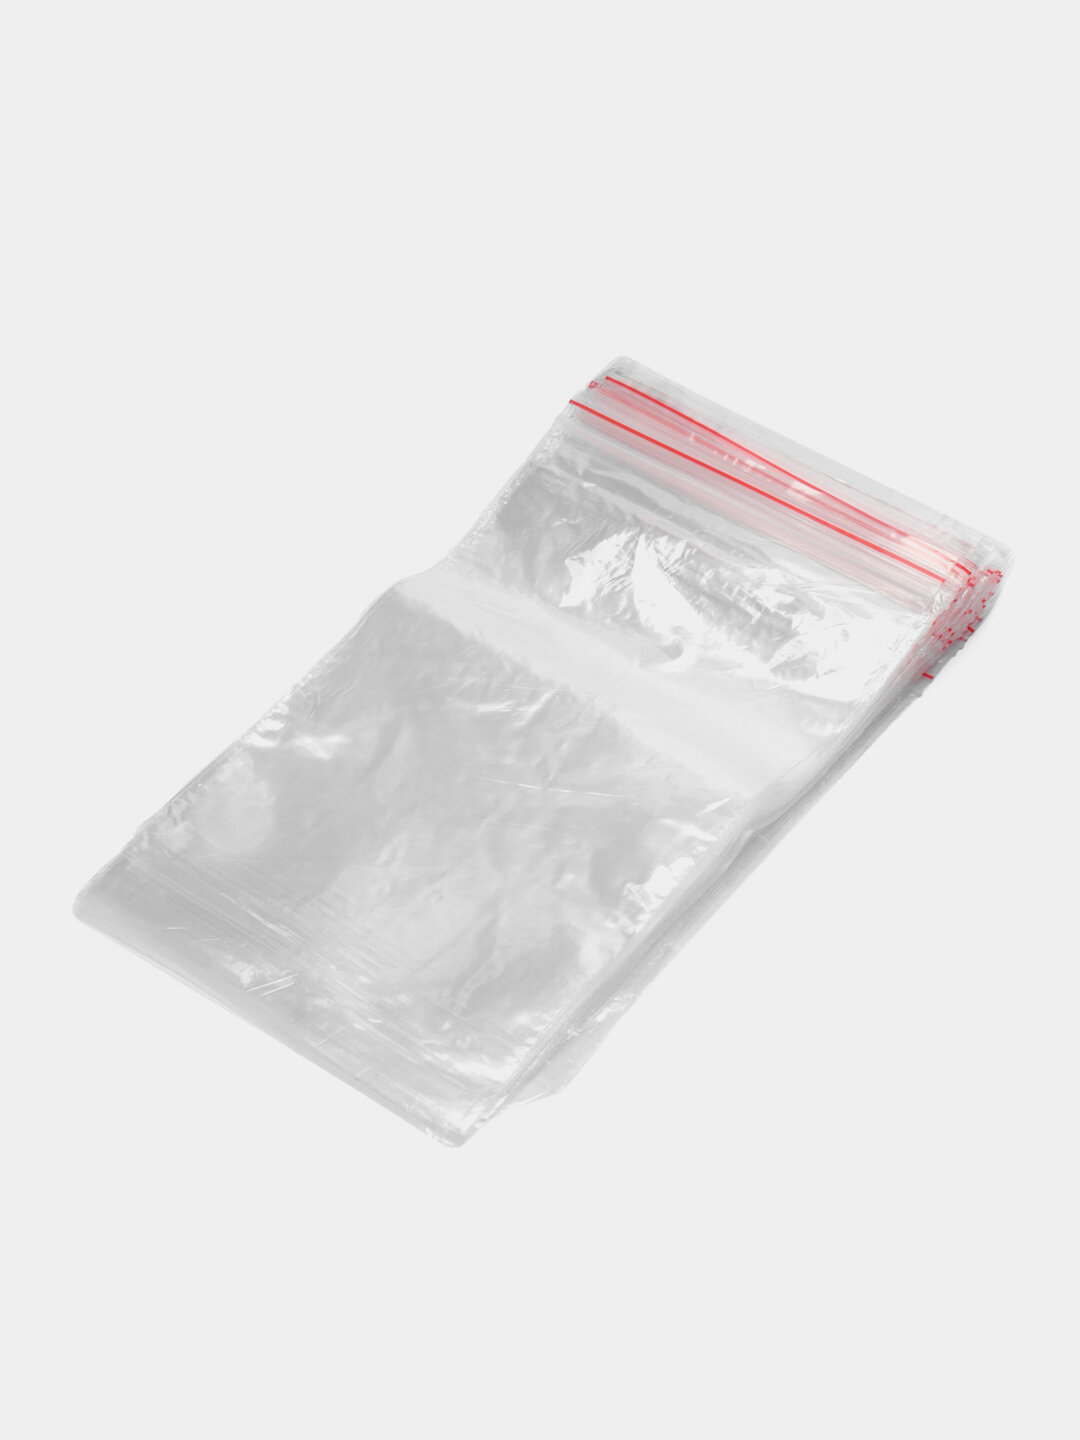 Пакеты Zip Lock 20х25 см 100шт с застежкой Зип Лок для упаковки хранения заморозки с замком зиплок гриппер 20 на 25 - фотография № 3